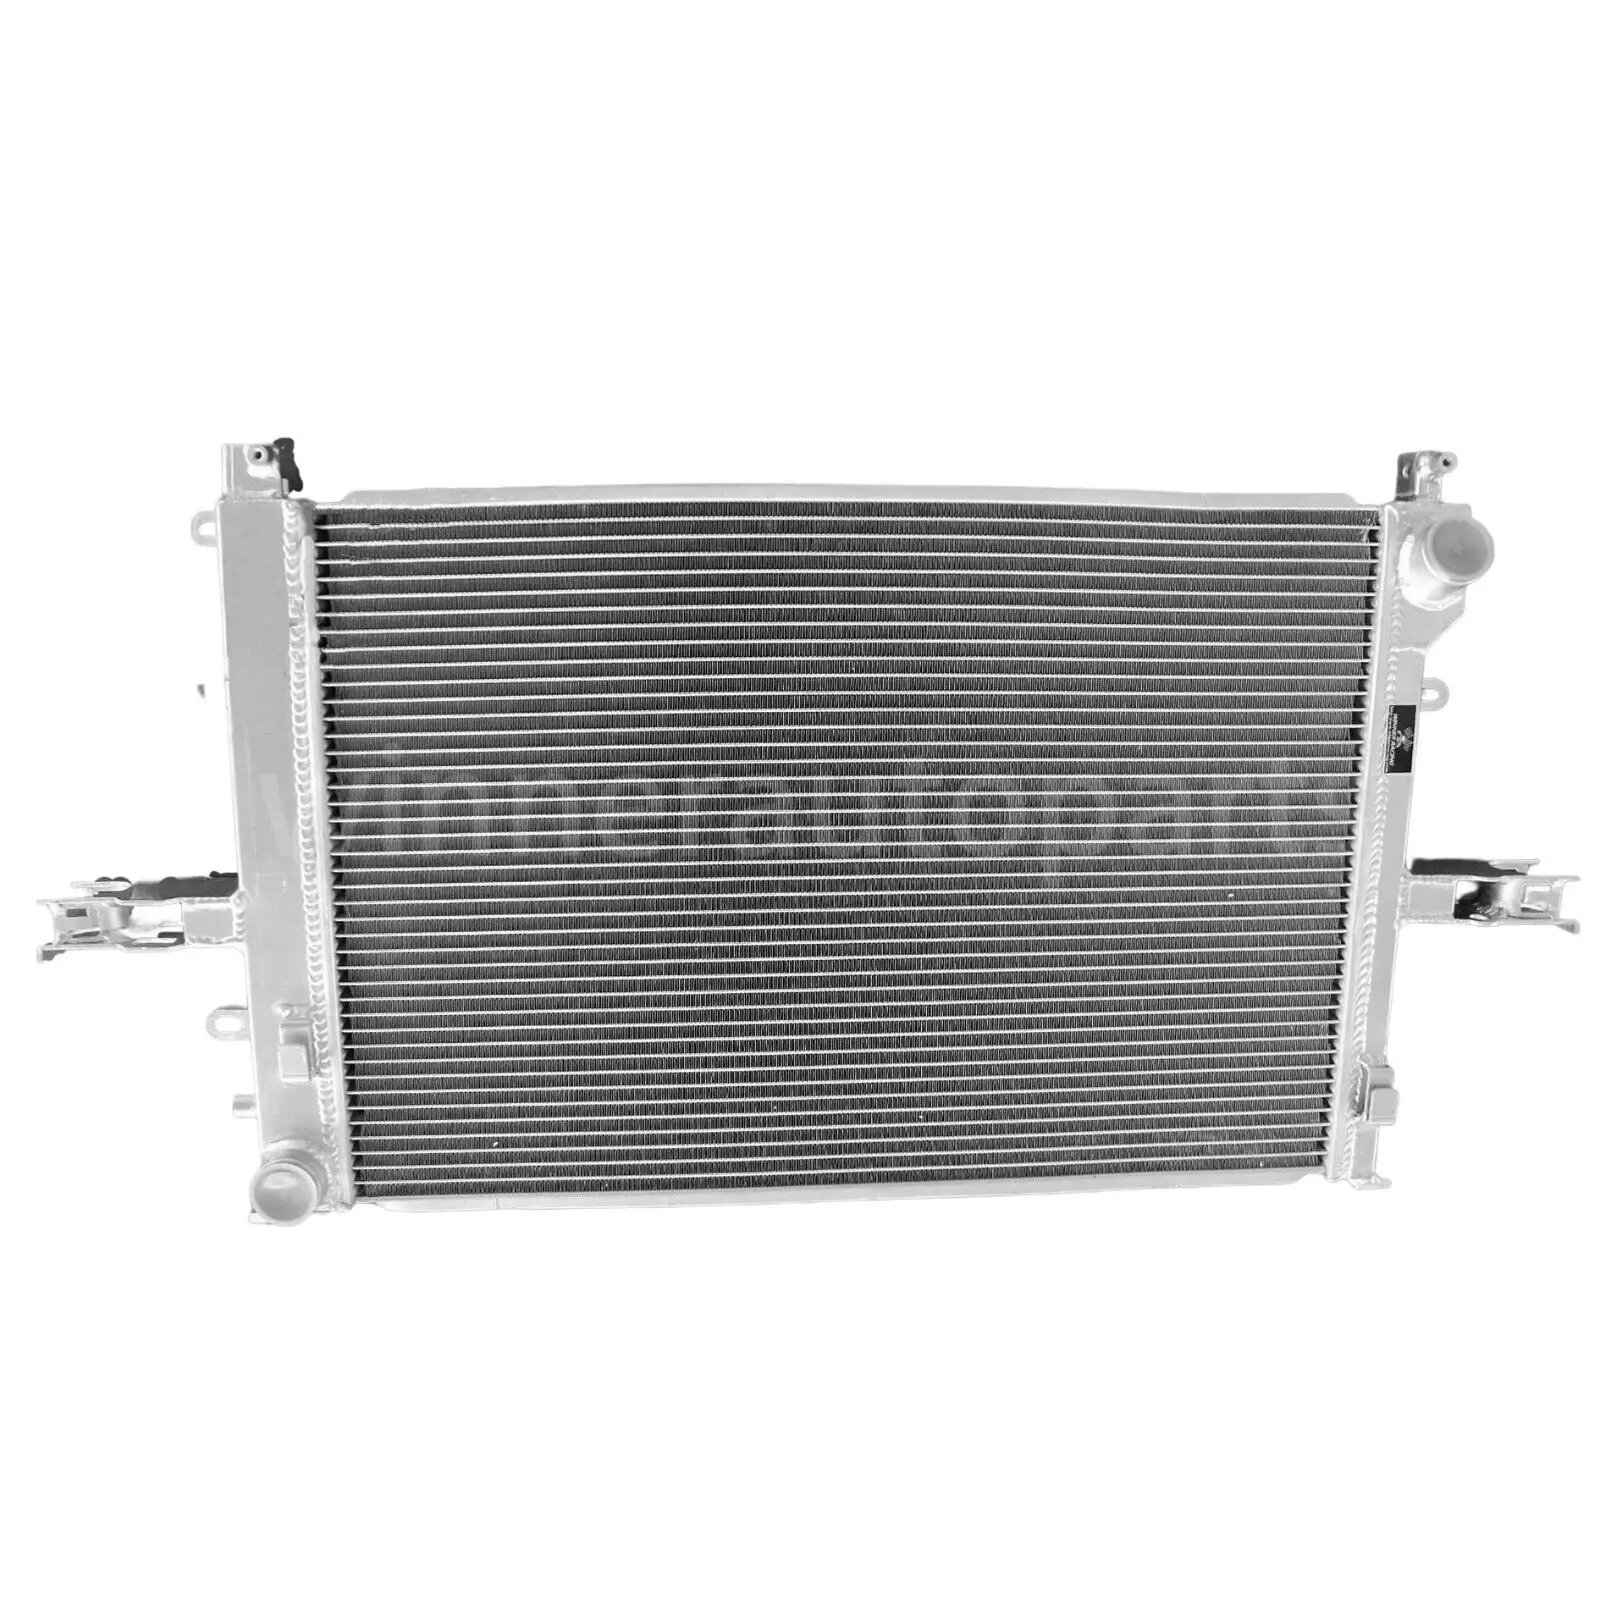 Aluminum Radiator FOR 00-10 S60/98-06 S80/V70II(285)99-07/XC70 Cross Country00+